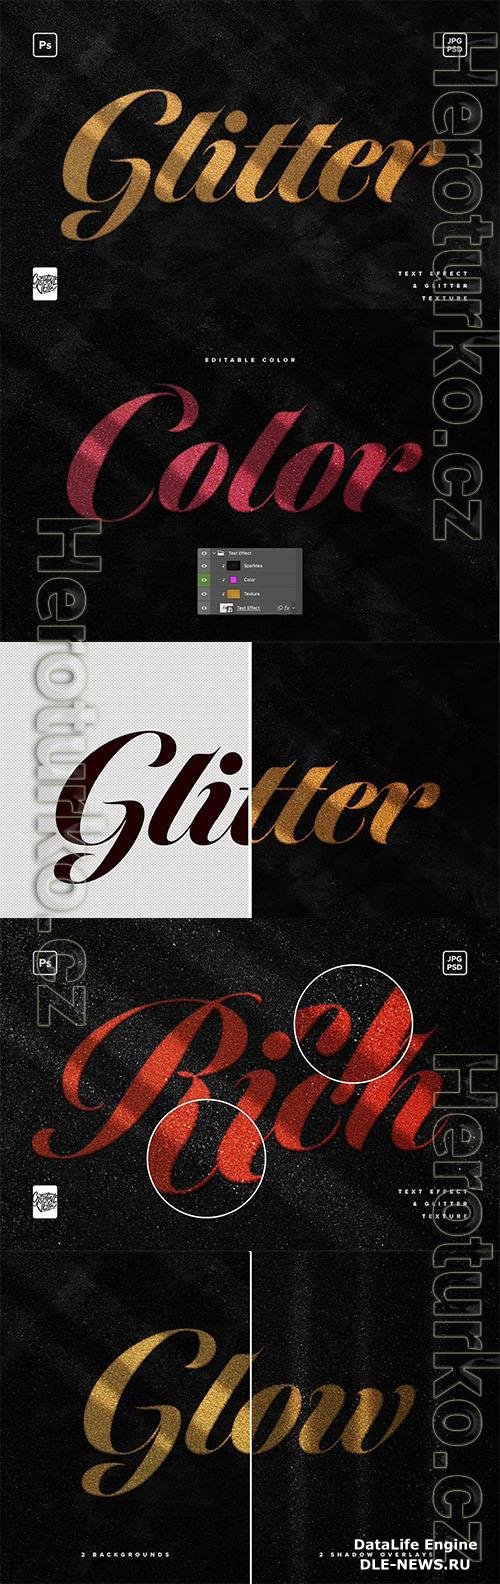 Glitter Photoshop Text Effect PSD